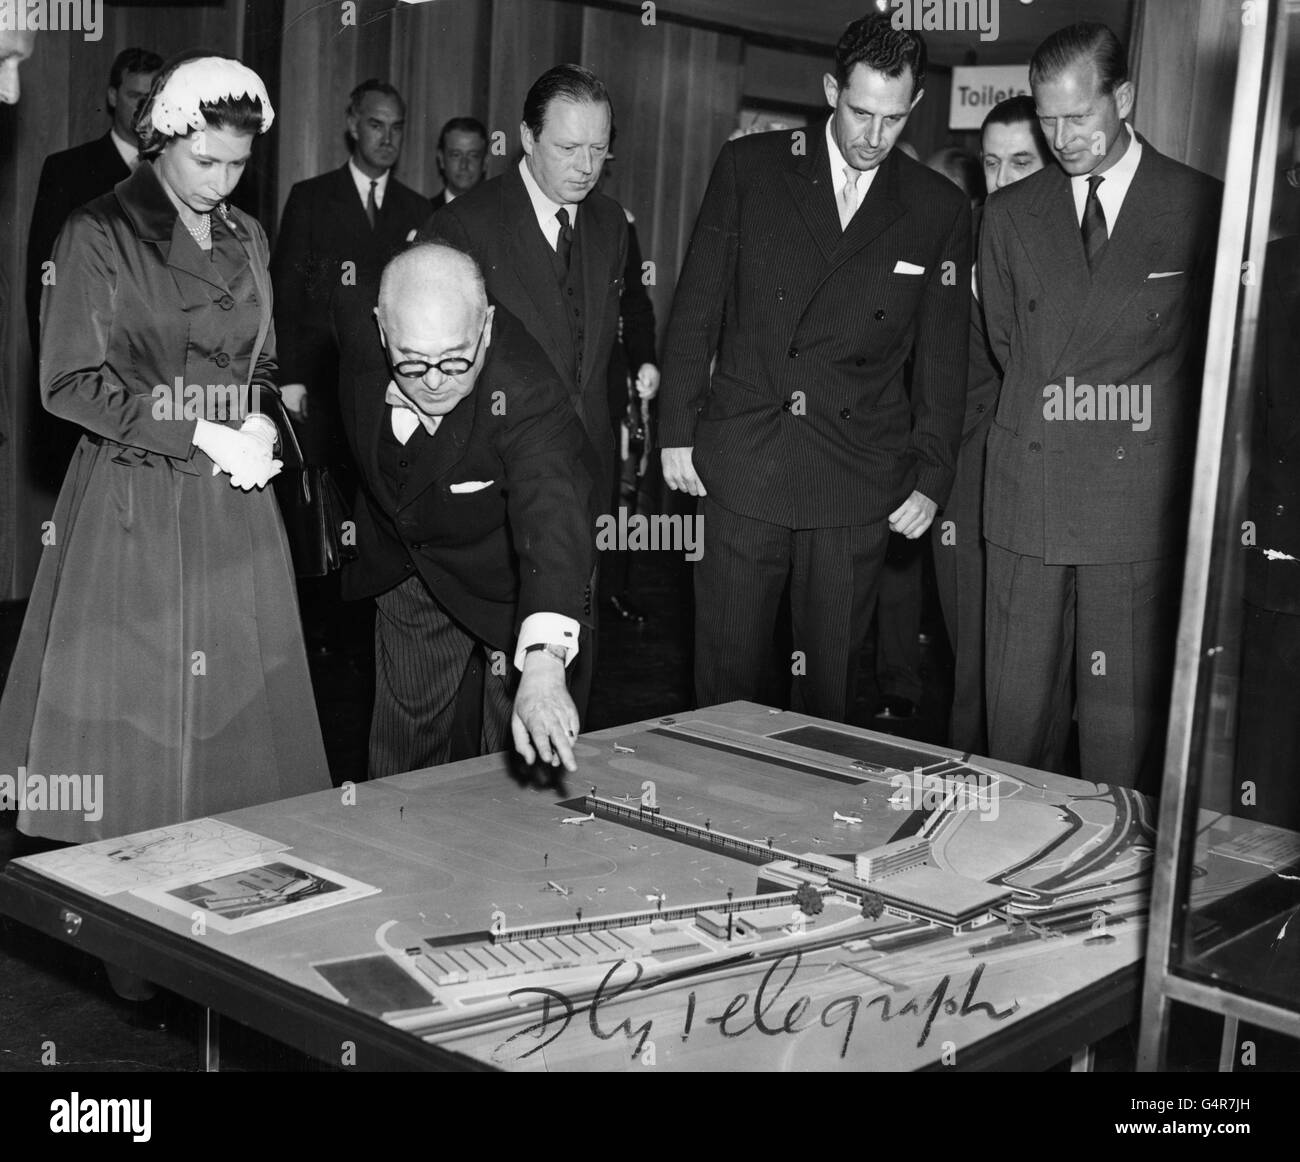 El ingeniero consultor Frederick S. Snow señala las características del nuevo aeropuerto de Gatwick en un modelo a la reina Isabel II y el duque de Edimburgo. Foto de stock